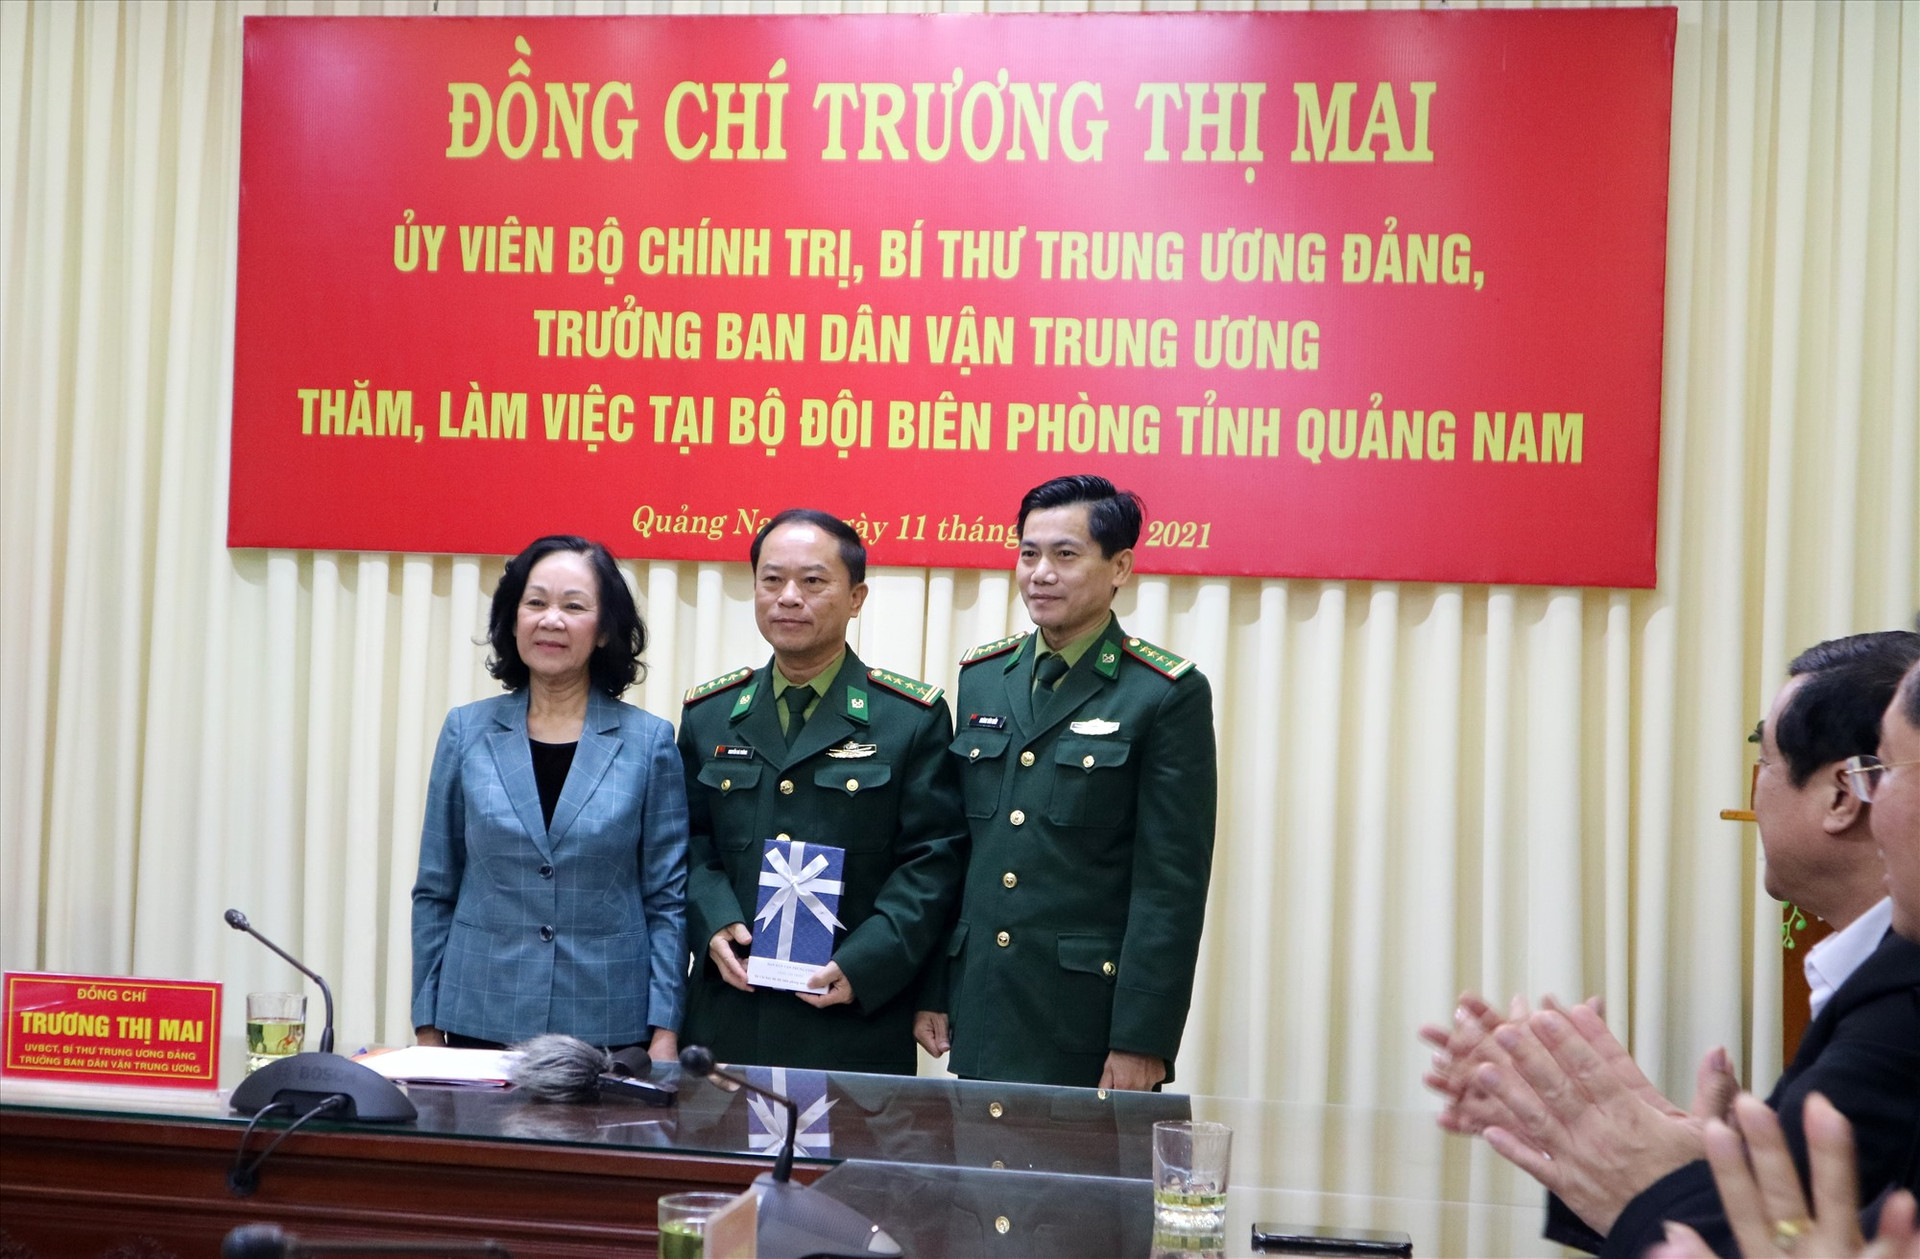 Đồng chí Trương Thị Mai trao quà động viên các chiến sĩ BĐBP tỉnh. Ảnh: A.N